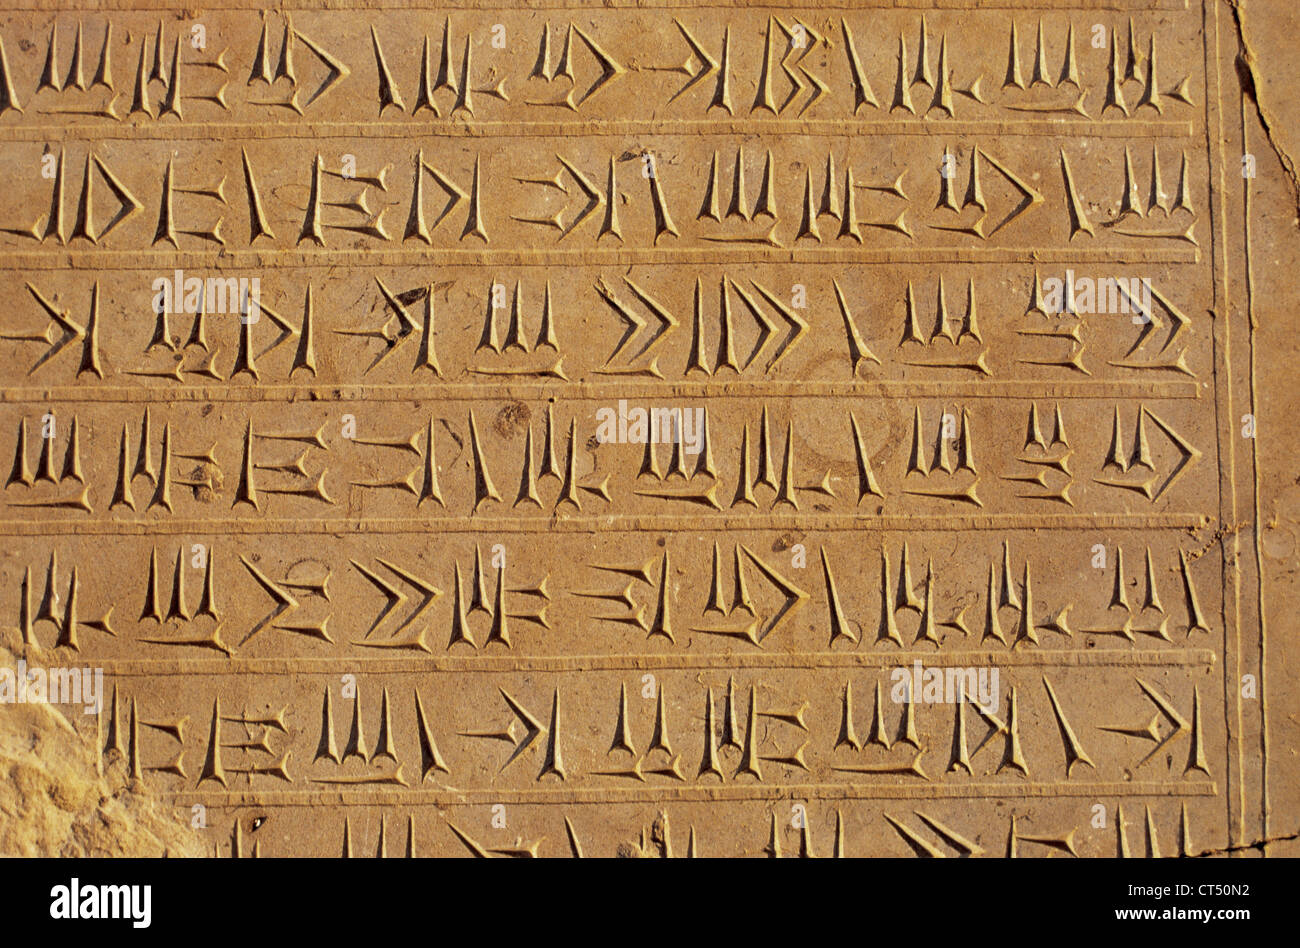 Impero persiano. Periodo achemenide. Scrittura cuneiforme sulla parete del palazzo di Persepoli. Foto Stock